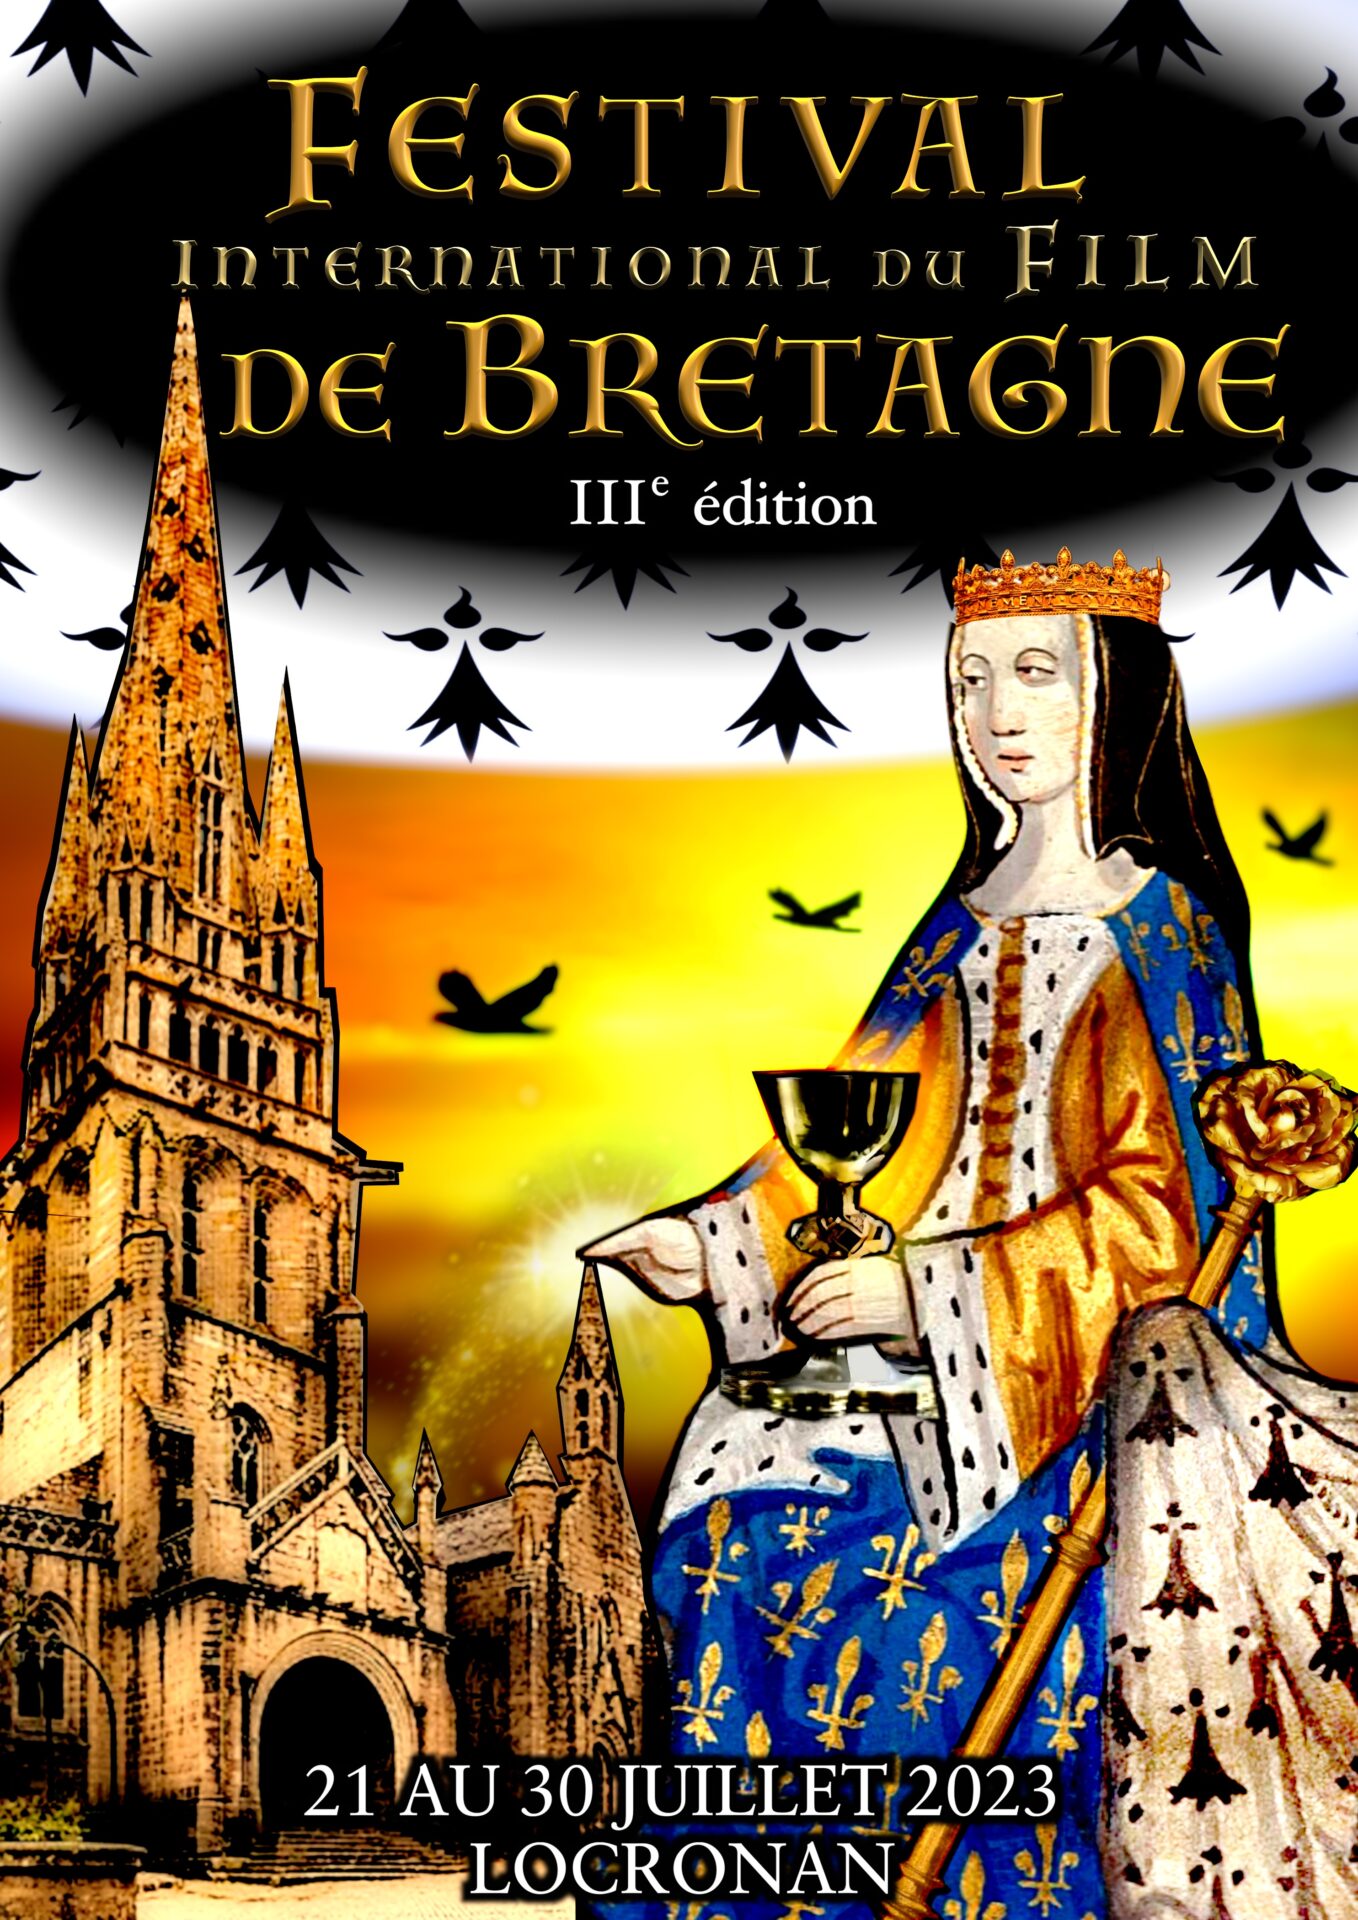 Affiche du Festival de Bretagne 2023